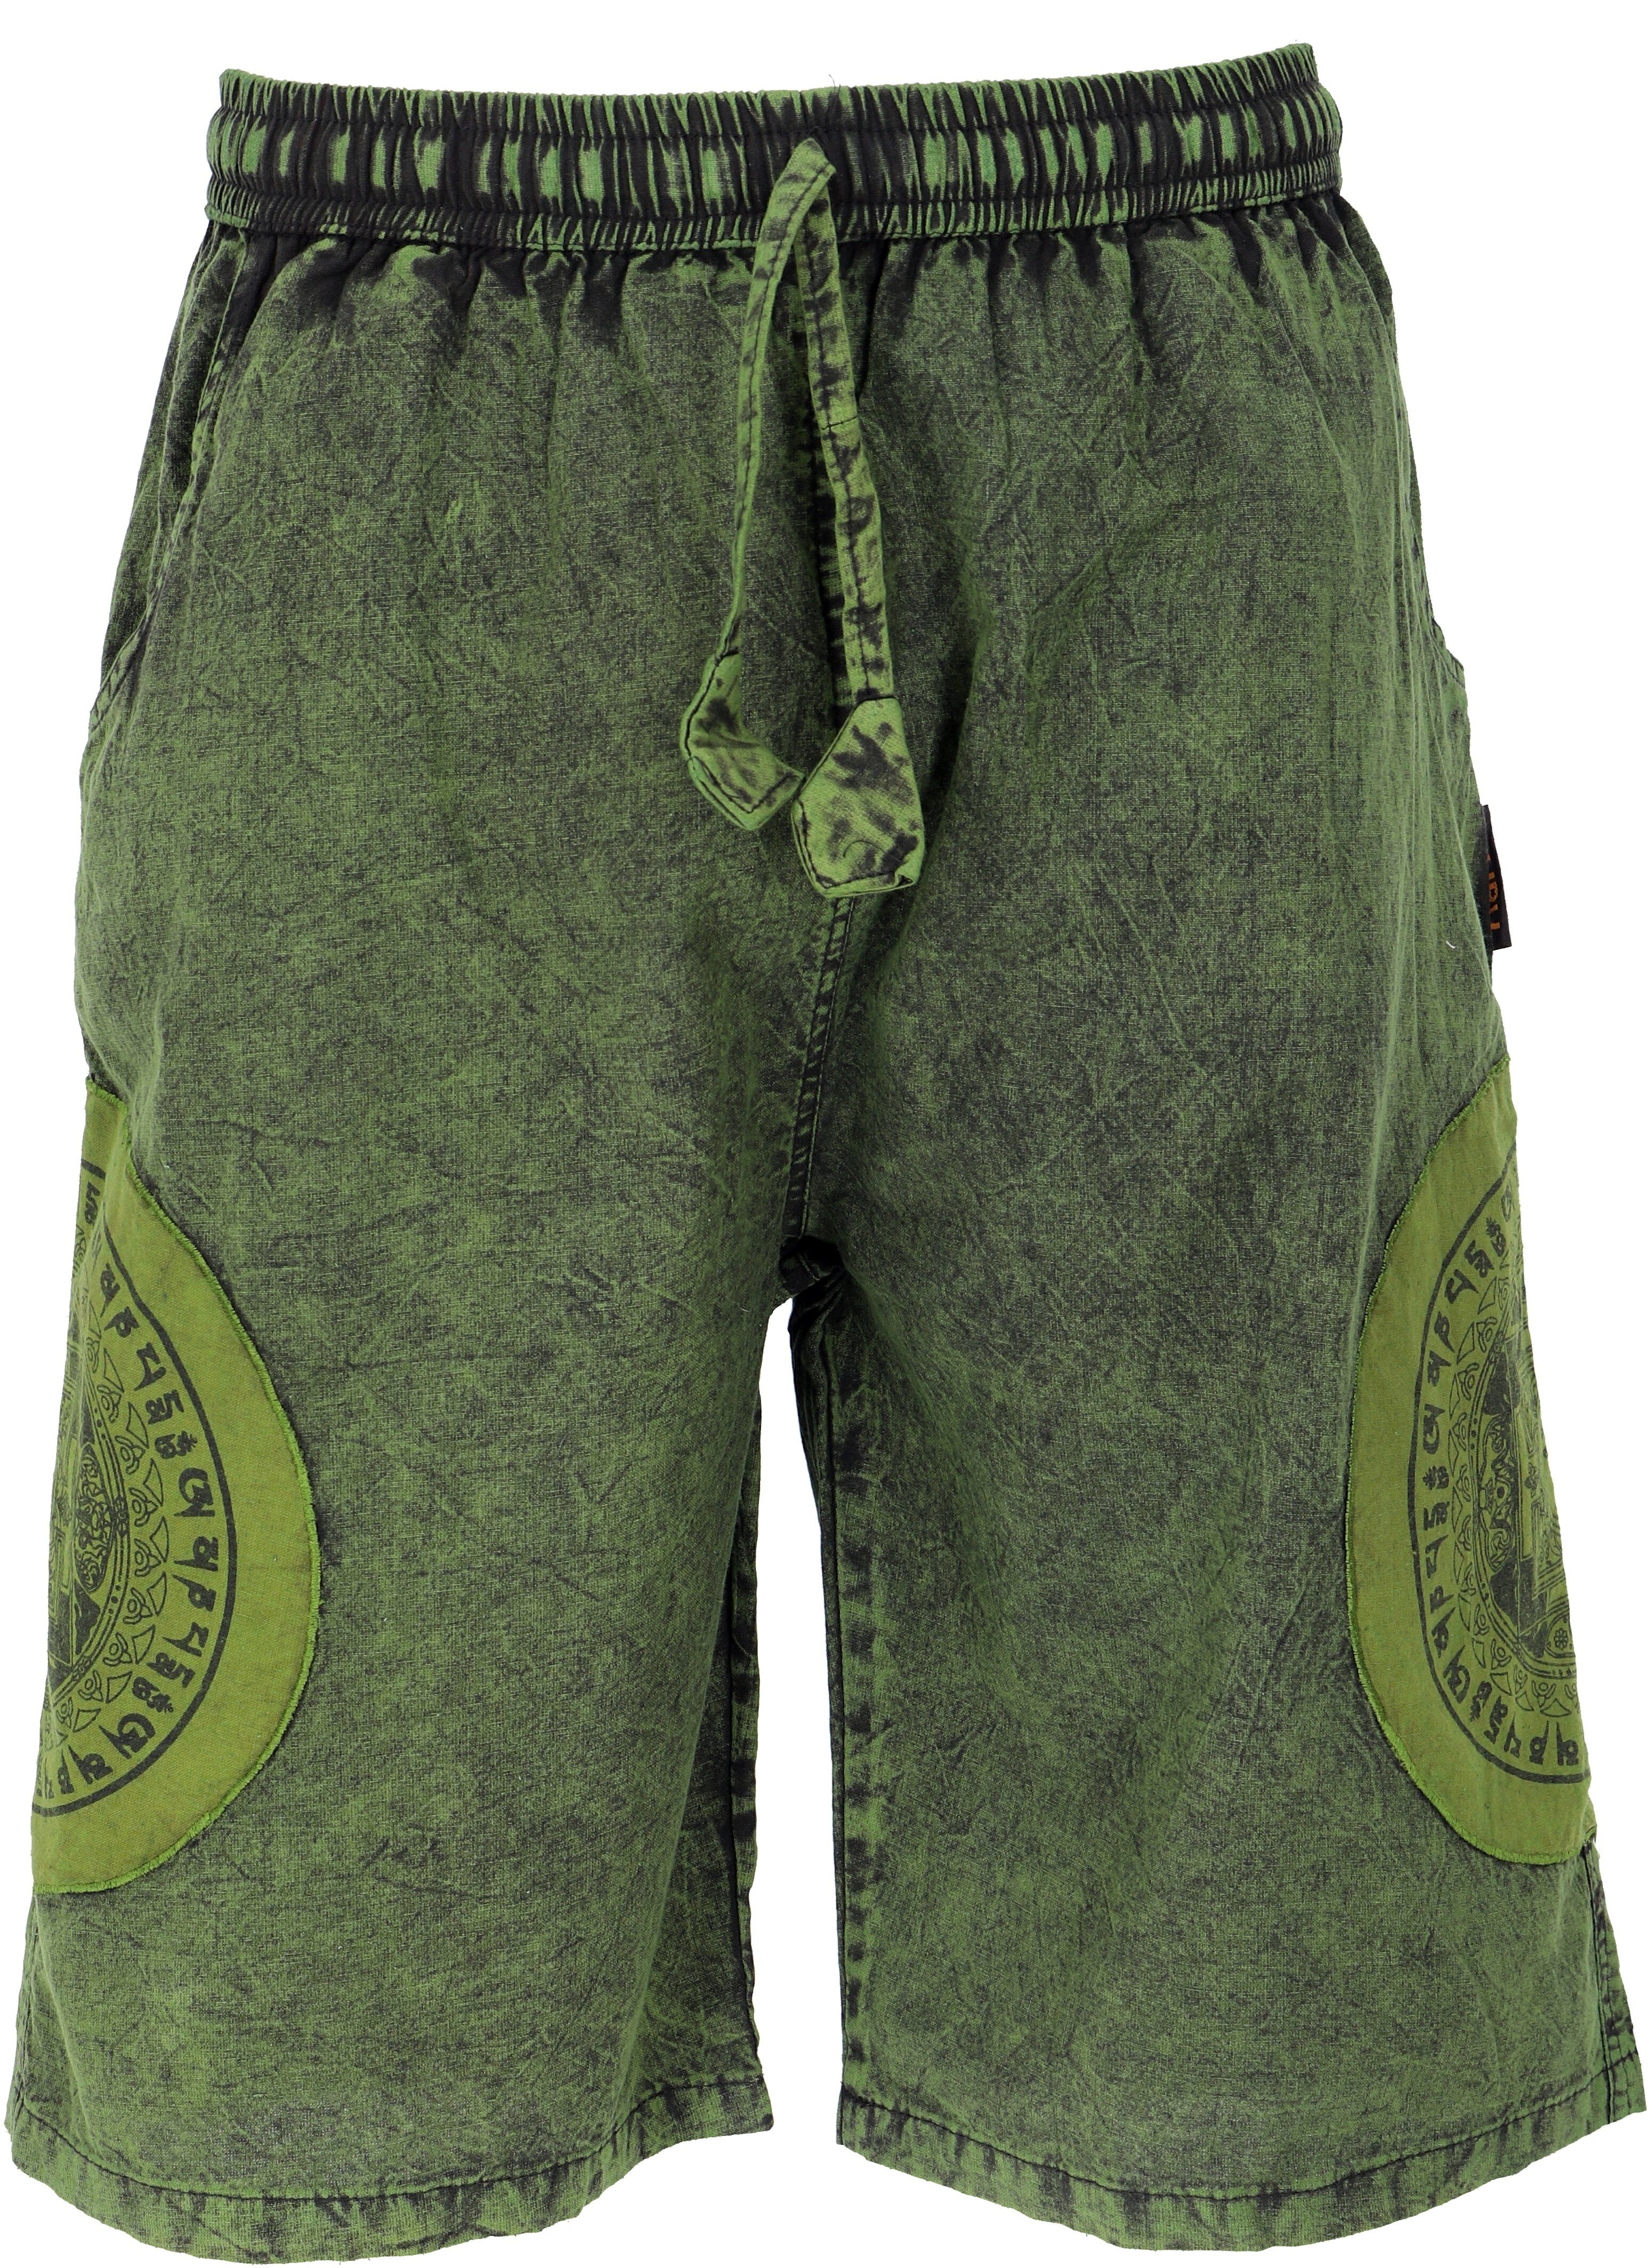 Guru-Shop Relaxhose Ethno Yogashorts, Stonwasch Patchwork Shorts.. Hippie, Ethno Style, alternative Bekleidung grün